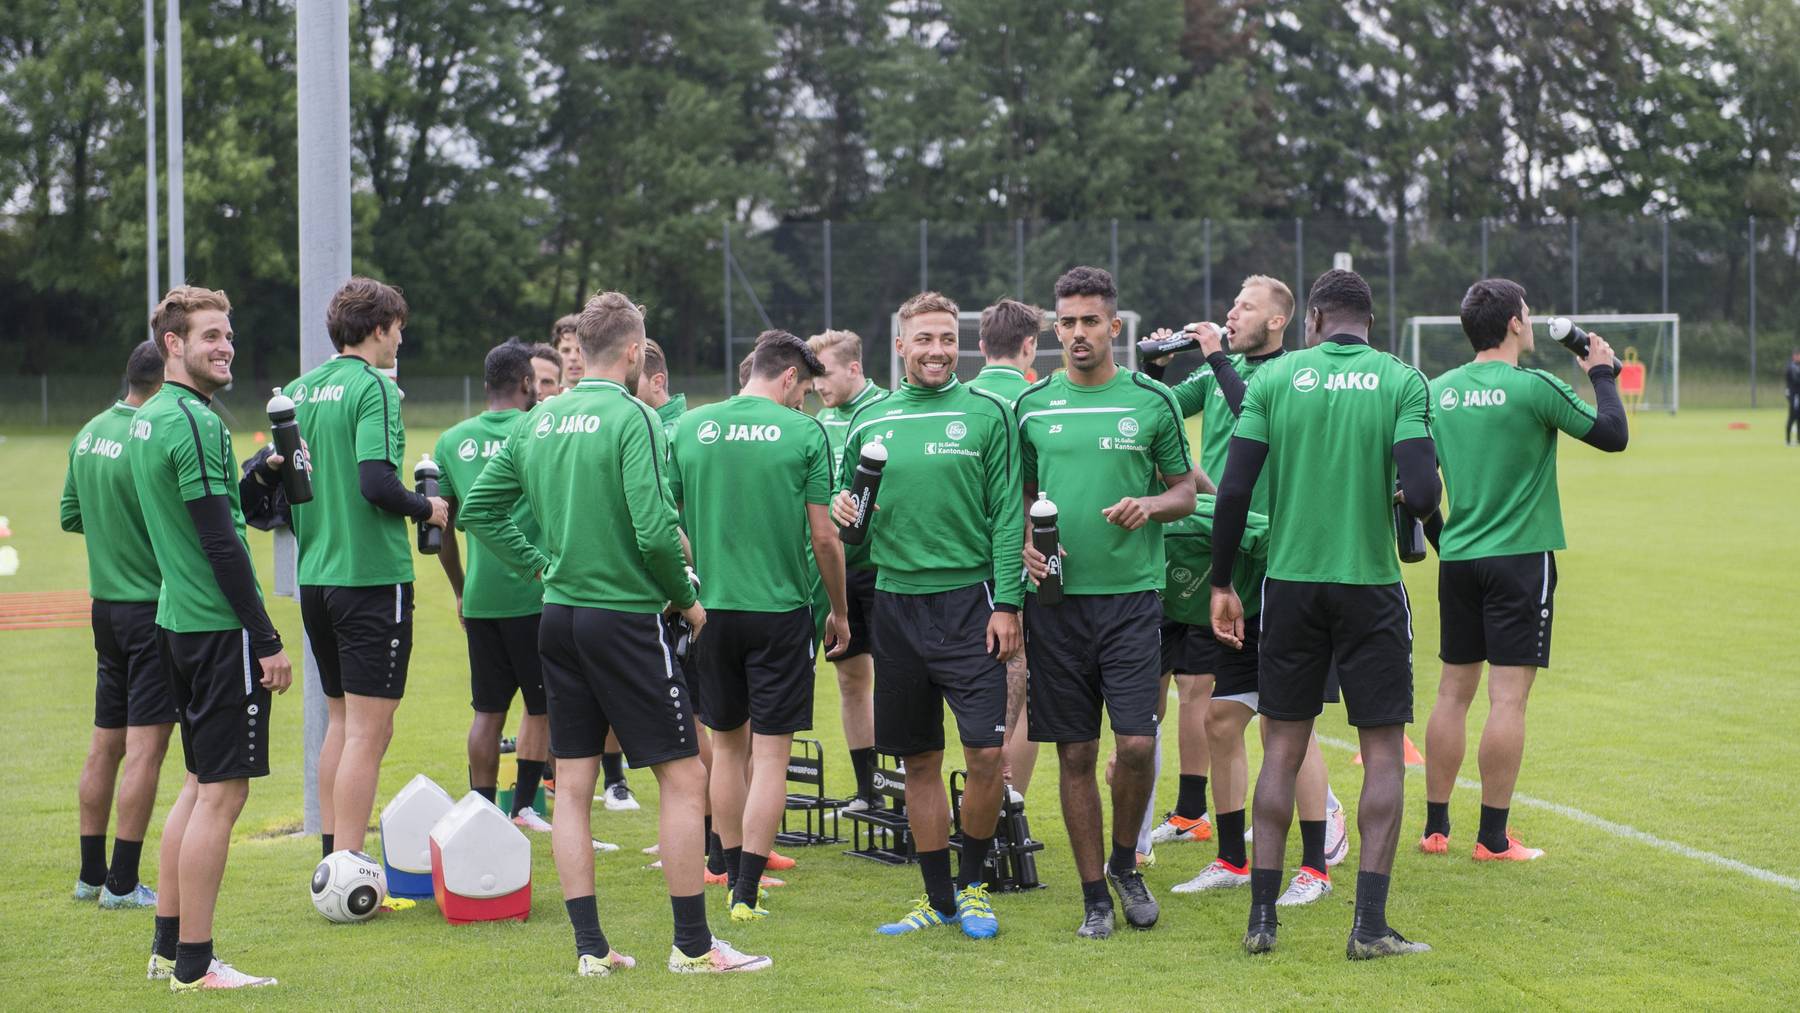 Die neue Saison geht los: Der FC St. Gallen nimmt einige Änderungen in die neue Saison mit.